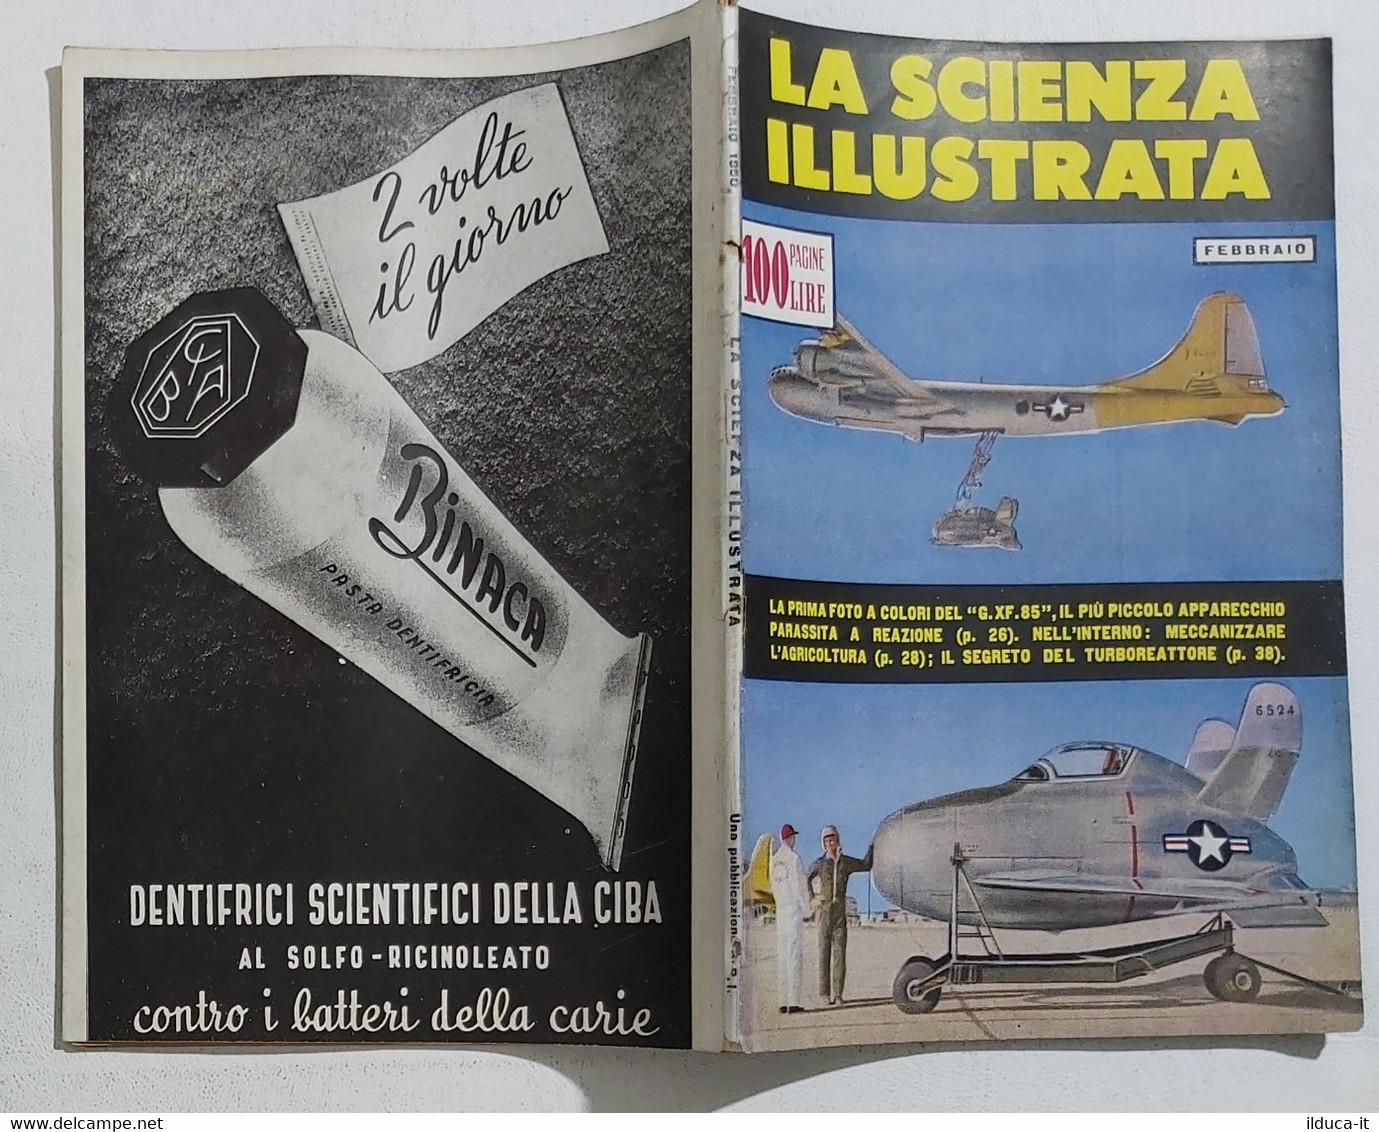 64339 La Scienza Illustrata - N. 2 1950 -Aereo GXF85 Il Turboreattore (Sommario) - Scientific Texts